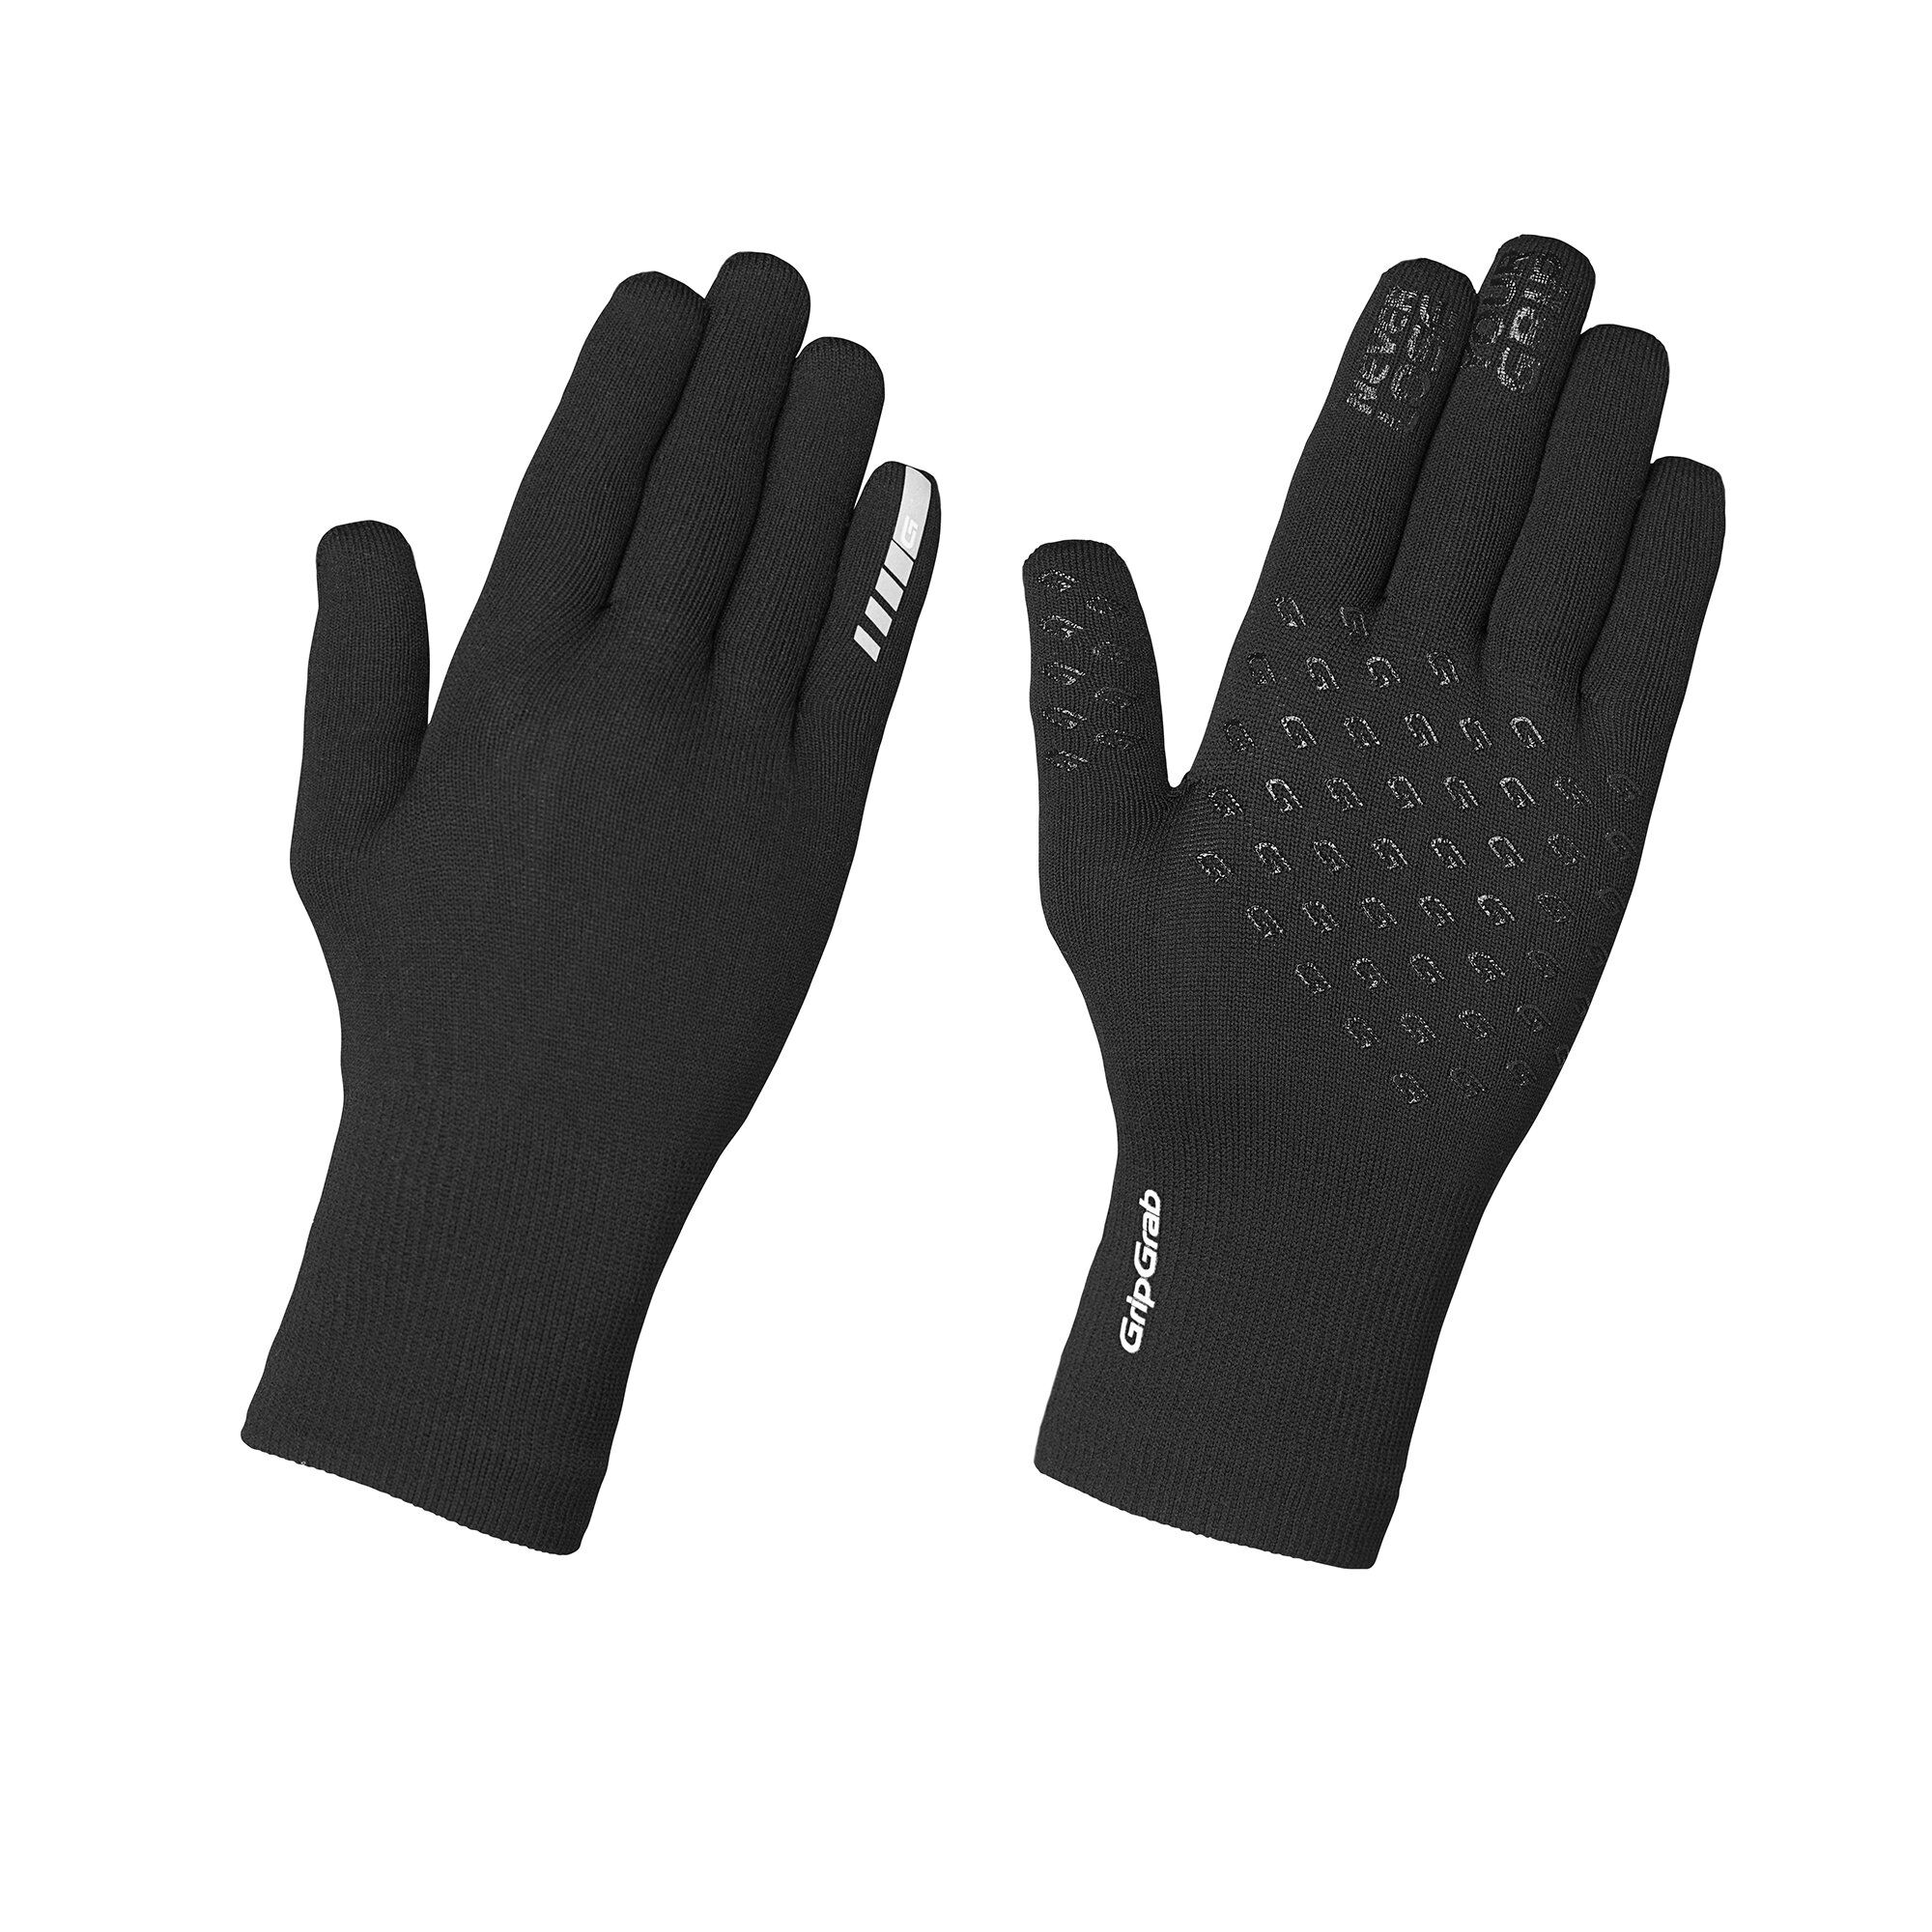 Grip Grab Waterproof Knitted Thermal Glove - Cykelhandskar